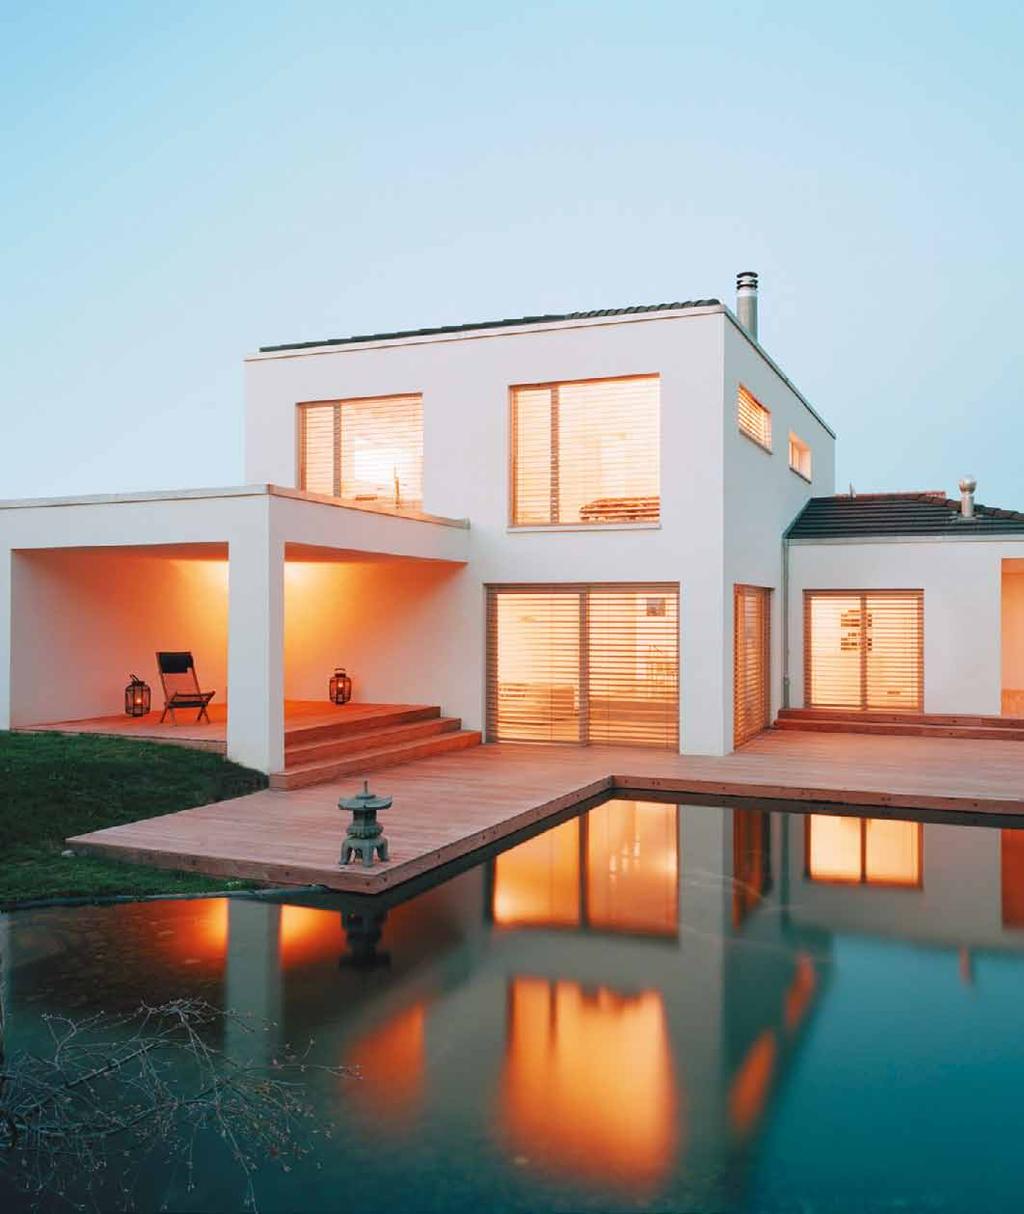 Qualität und konsequenz: kompromisslos. Charakter, Qualität, Energieeffizienz: Marty Häuser setzt Werte in klare Formen um. Genau nach Ihren Vorstellungen.